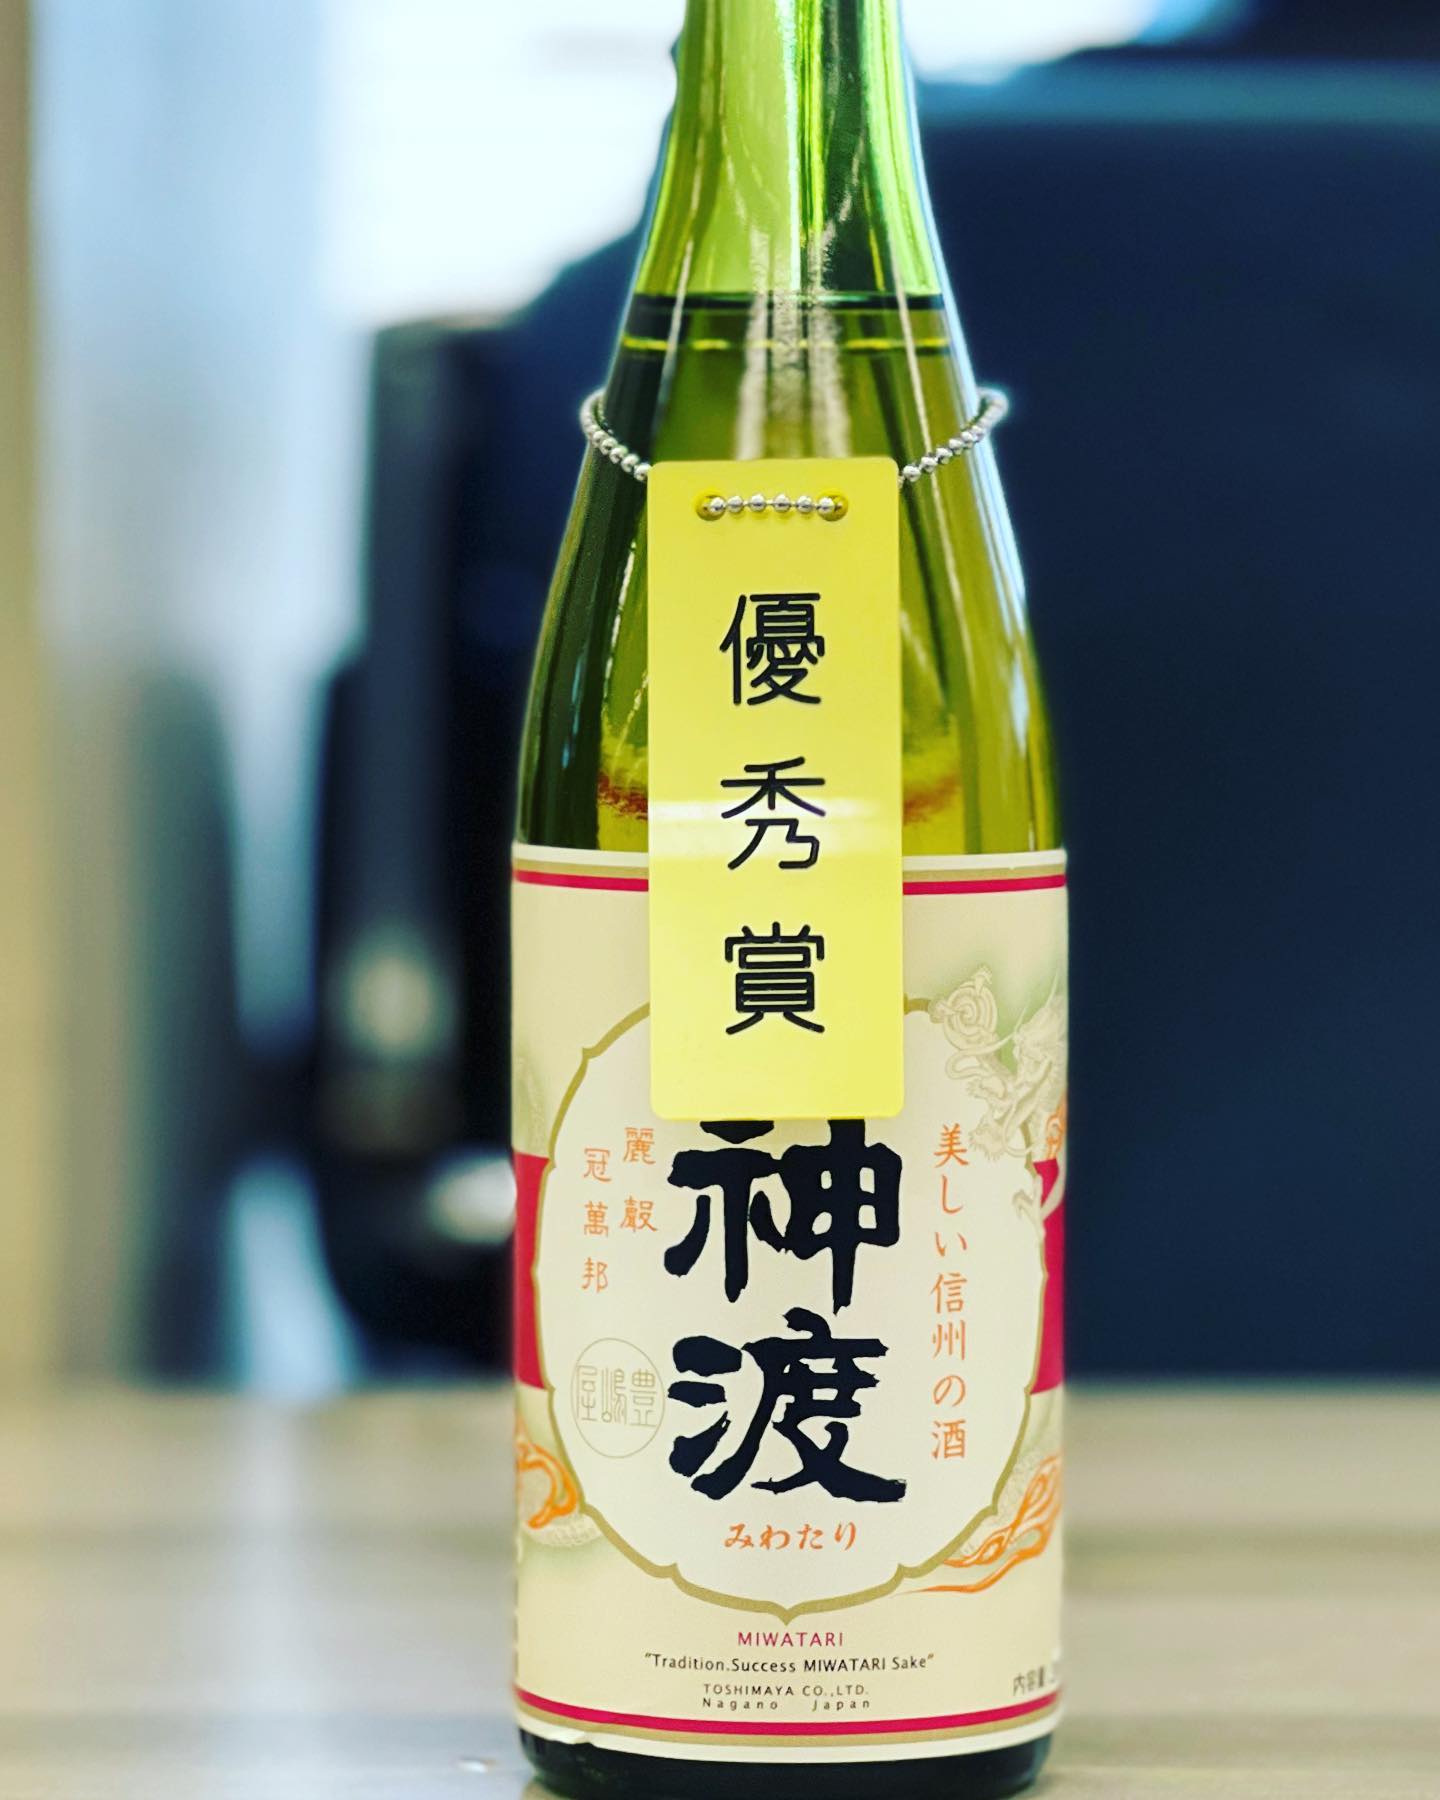 2021.11.04　第92回関東信越国税局酒類鑑評会 にて優秀賞を頂く事が出来ました。